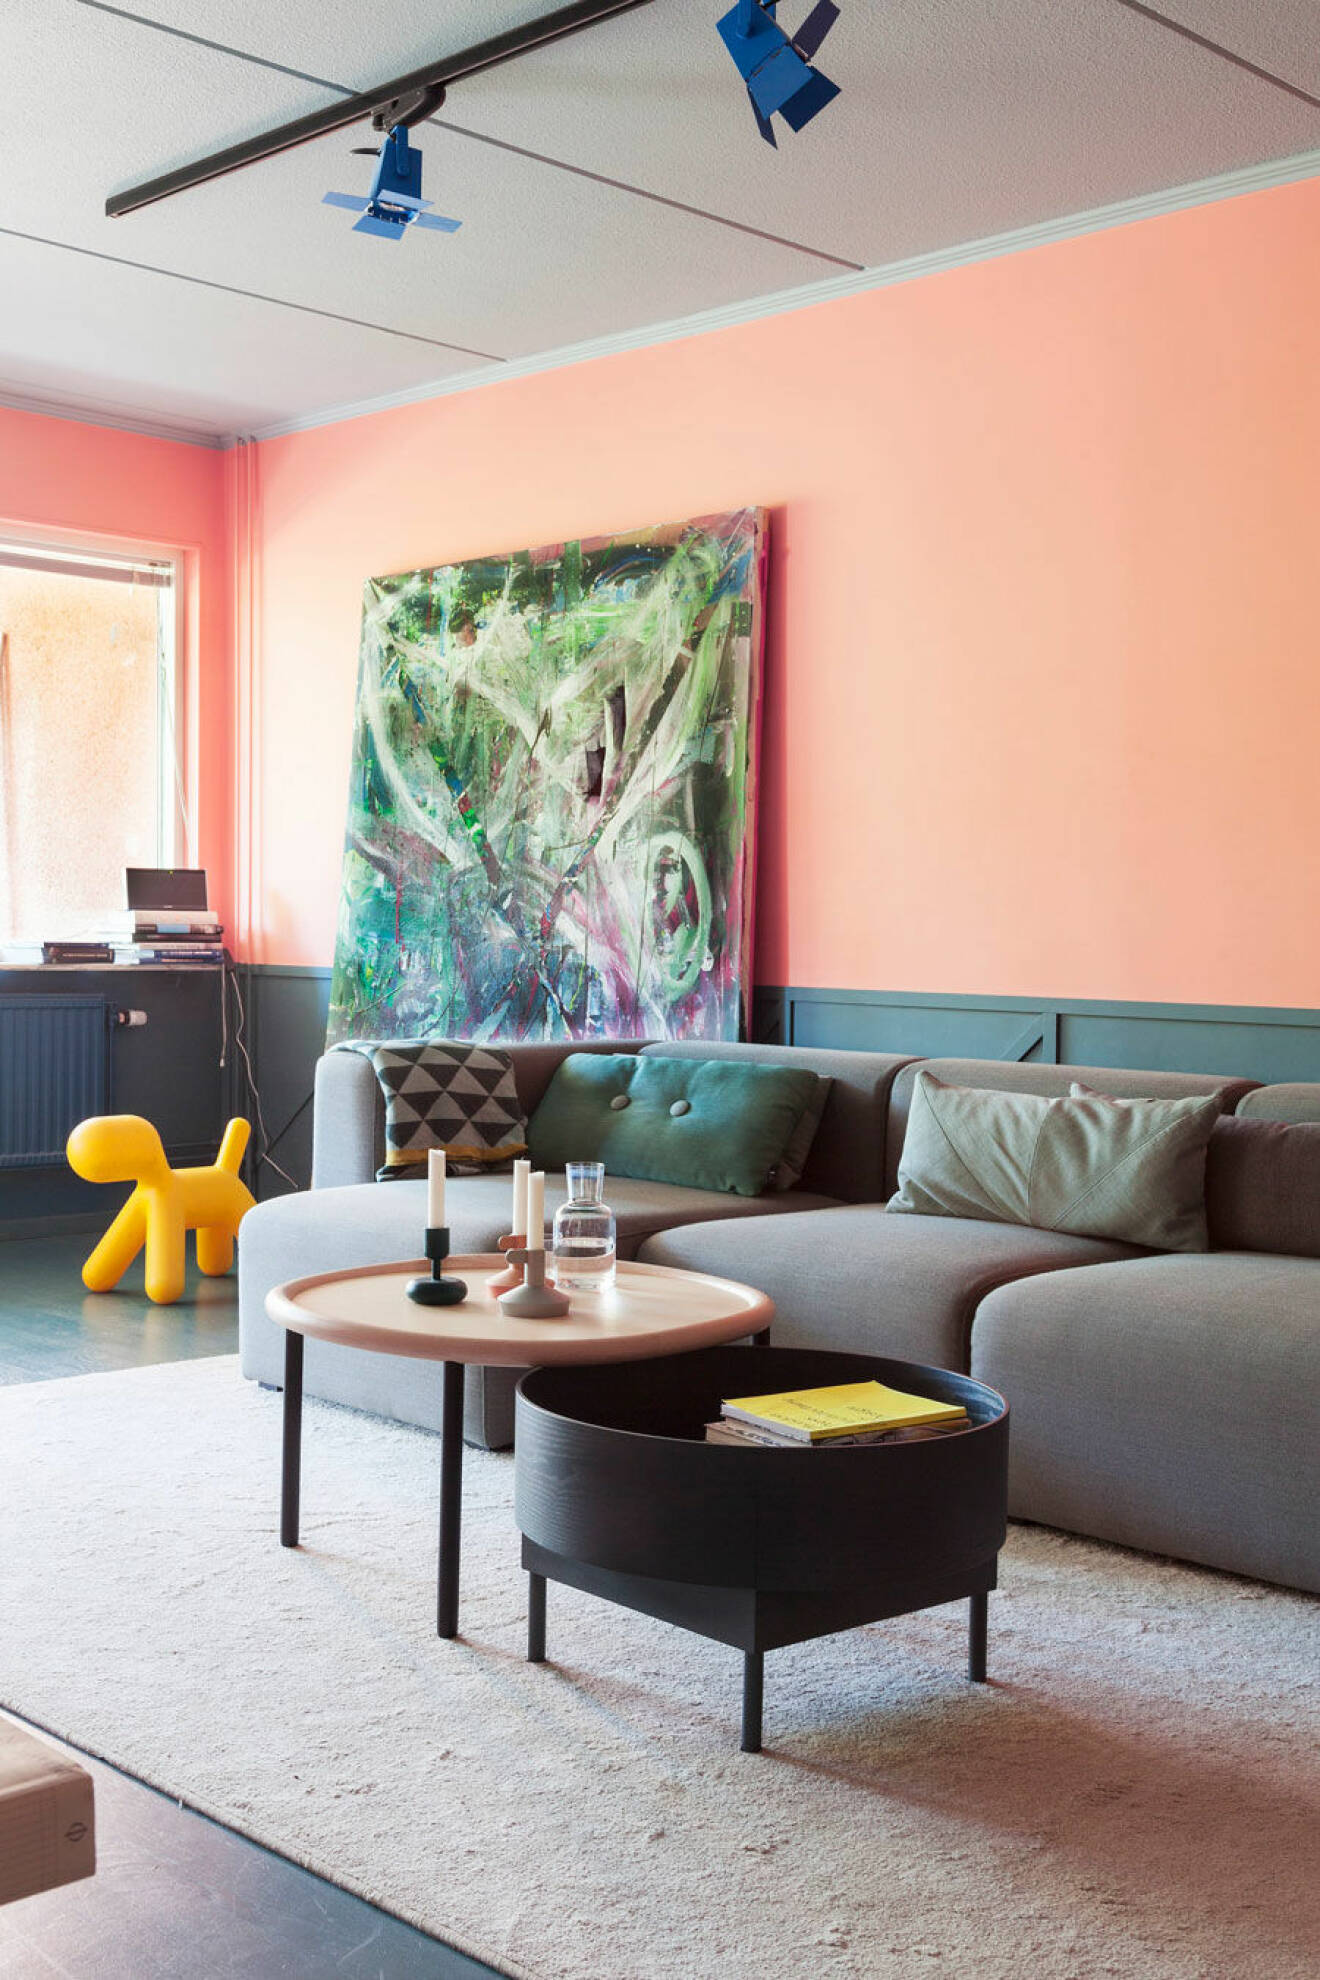 Måla väggarna i rosa i vardagsrummet för en lekfull känsla